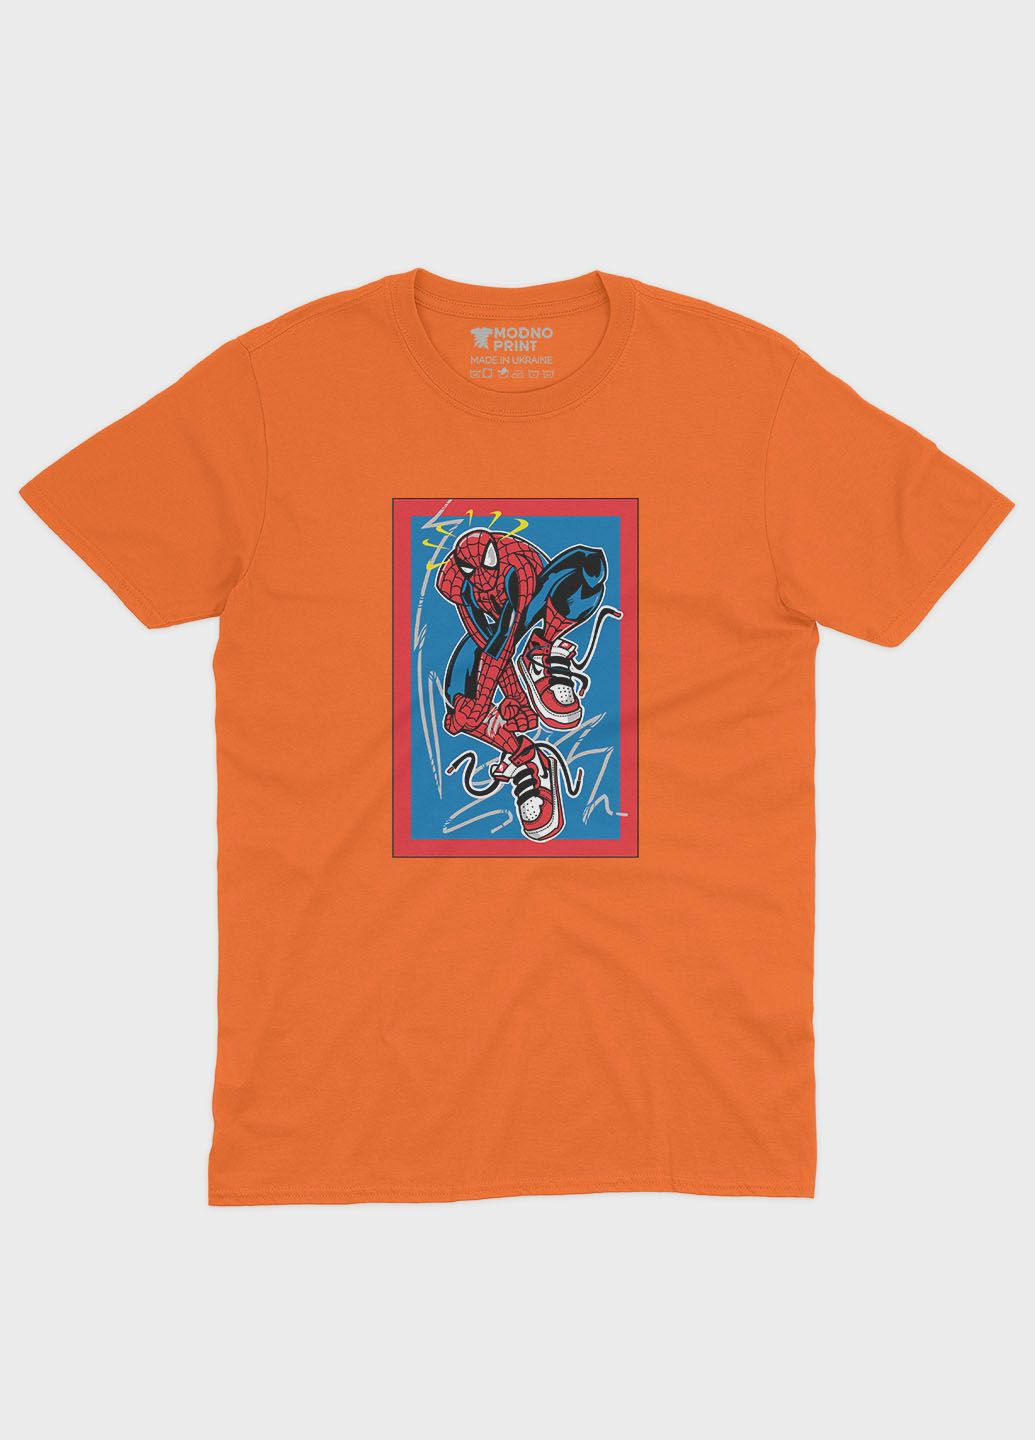 Оранжевая демисезонная футболка для мальчика с принтом супергероя - человек-паук (ts001-1-ora-006-014-067-b) Modno